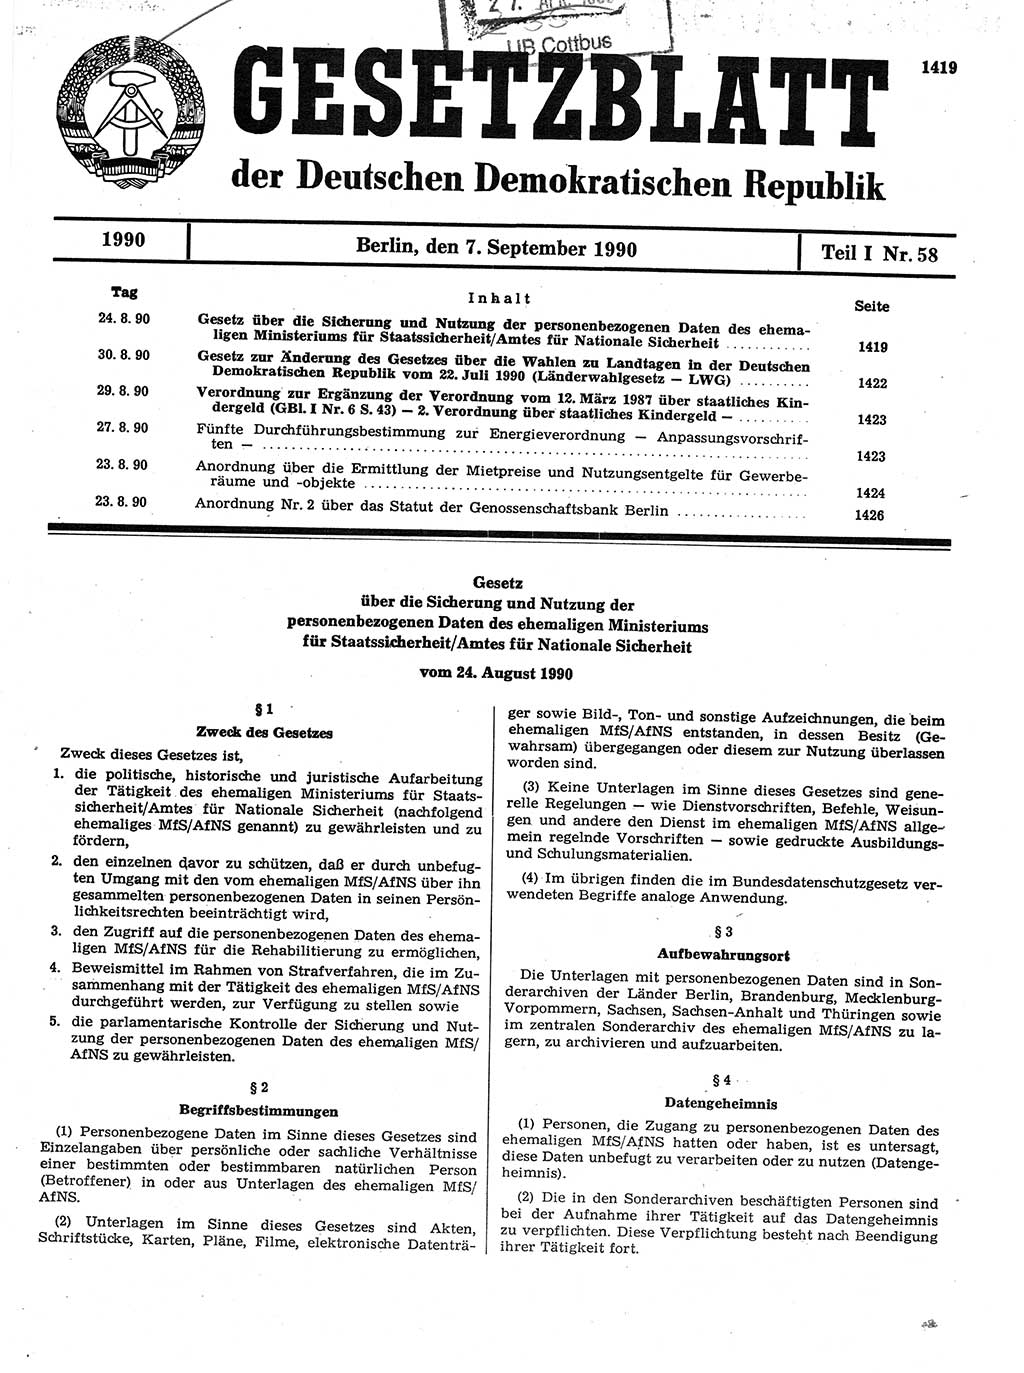 Gesetzblatt (GBl.) der Deutschen Demokratischen Republik (DDR) Teil Ⅰ 1990, Seite 1419 (GBl. DDR Ⅰ 1990, S. 1419)